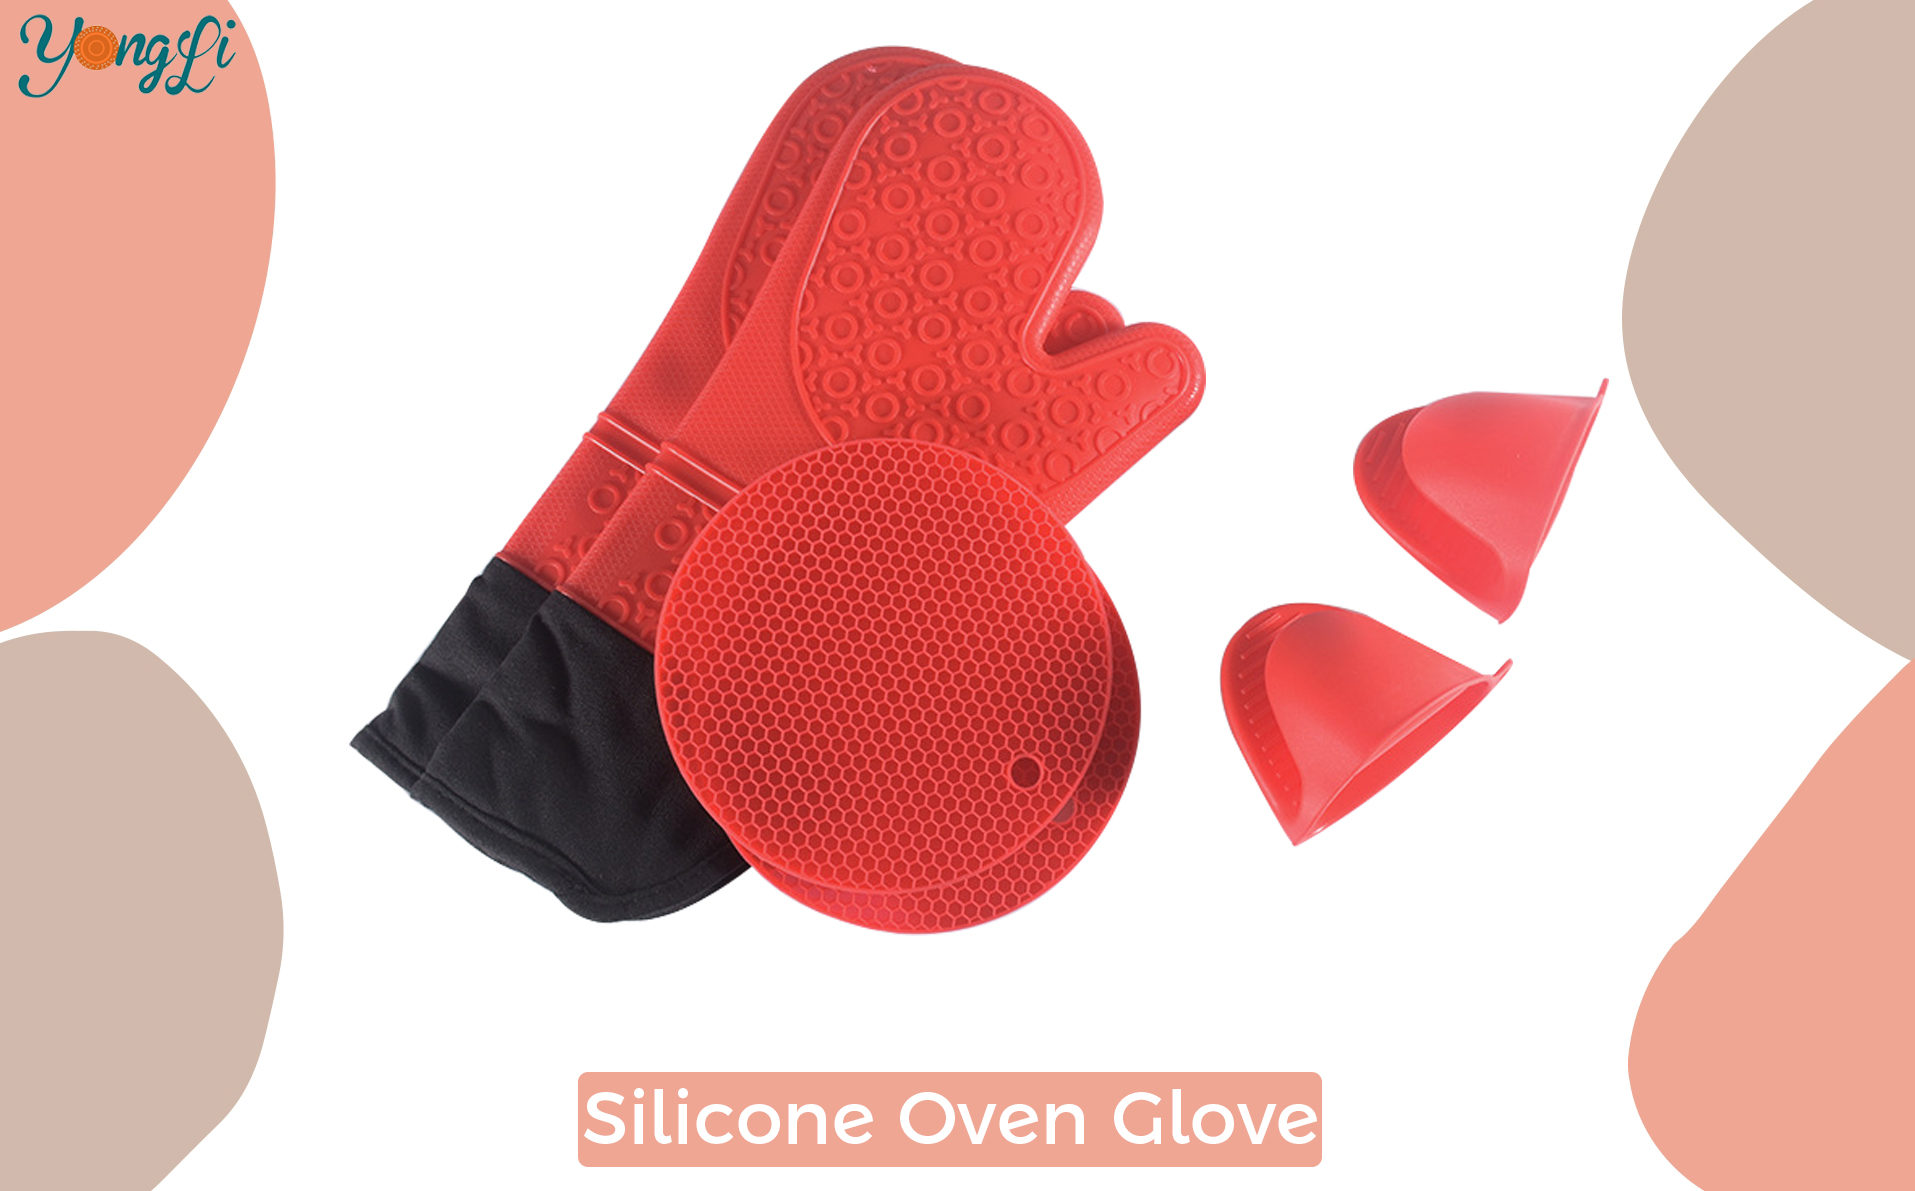 Proizvođač silikonskih rukavica |Yongli